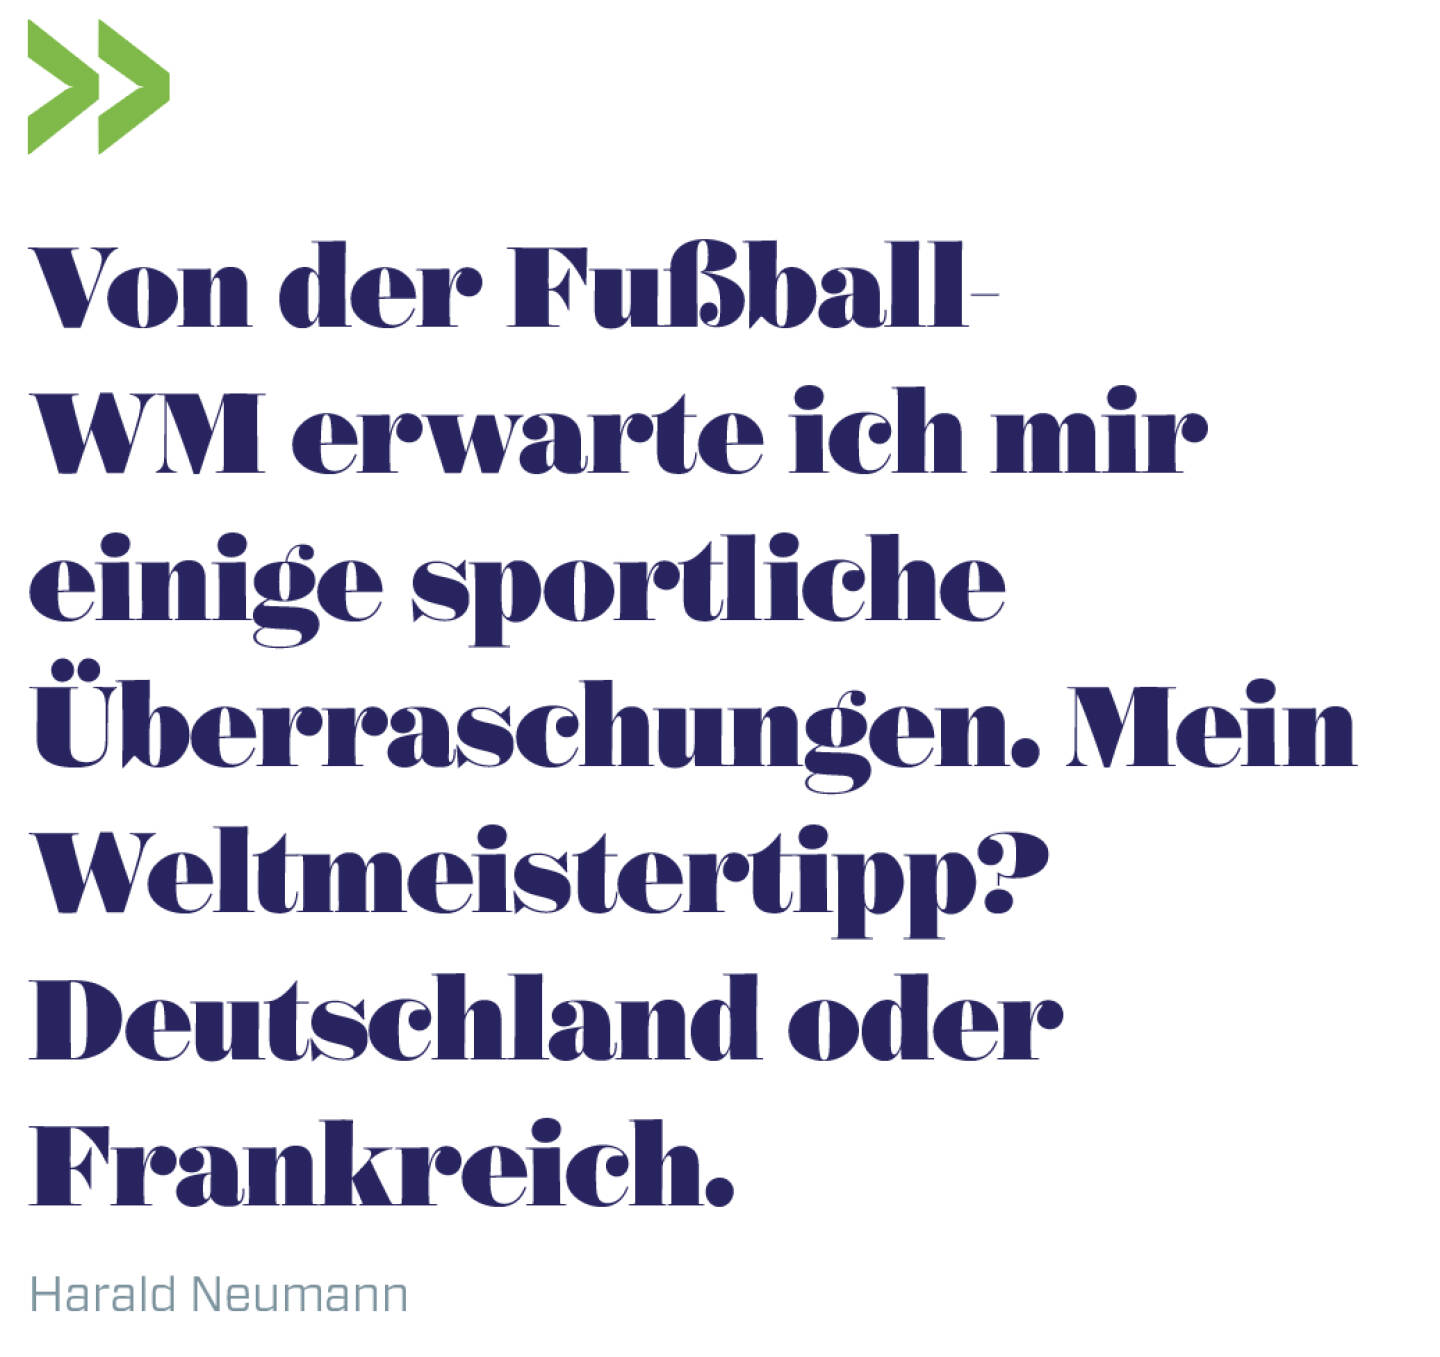 Von der Fußball-WM erwarte ich mir einige sportliche Überraschungen. Mein Weltmeistertipp? Deutschland oder Frankreich.  
Harald Neumann